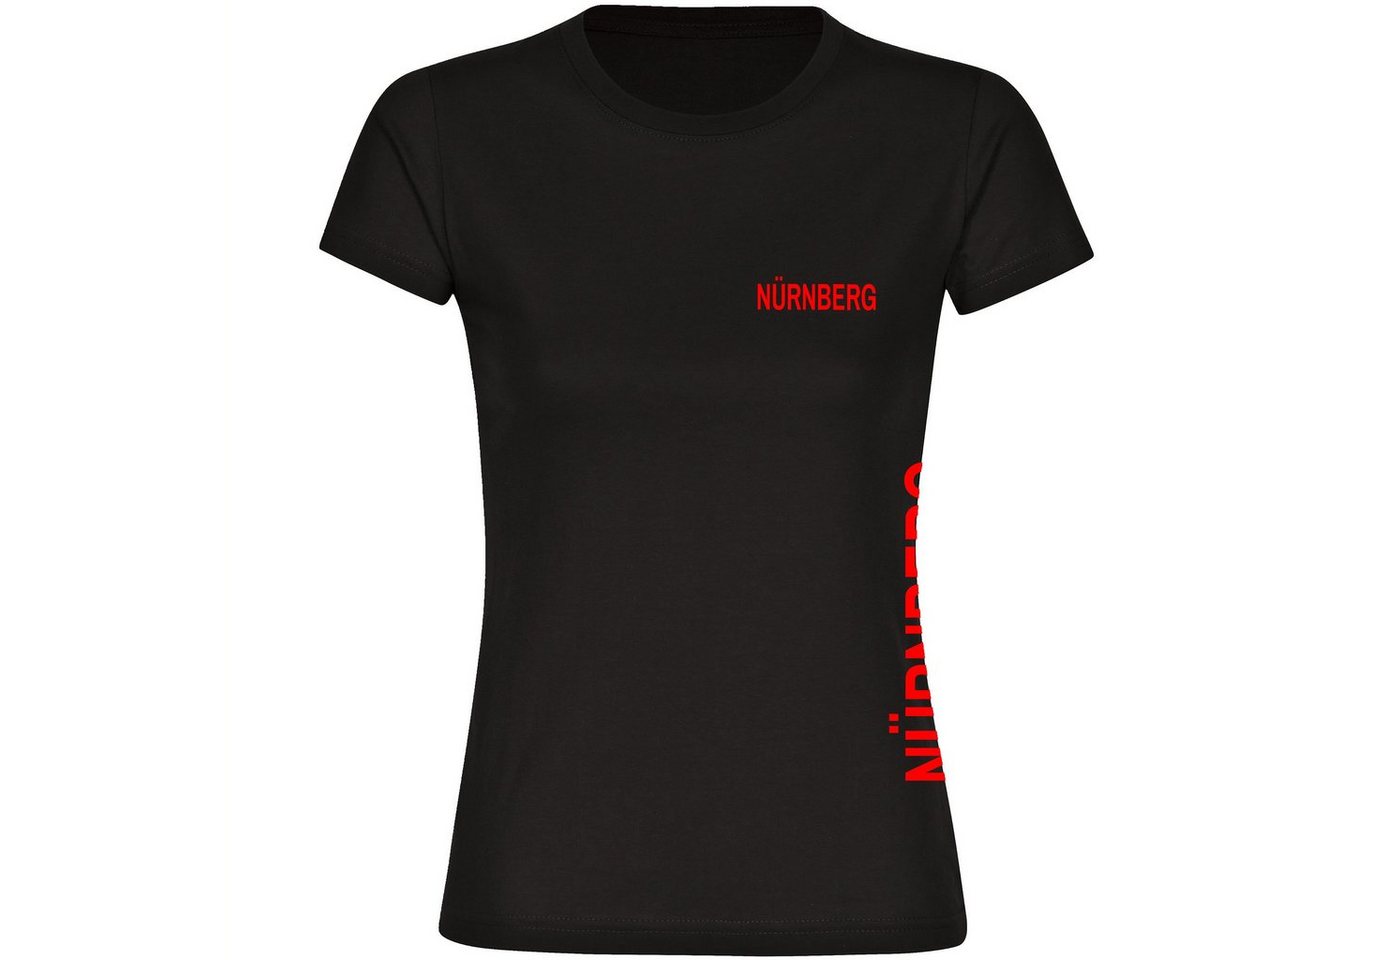 multifanshop T-Shirt Damen Nürnberg - Brust & Seite - Frauen von multifanshop